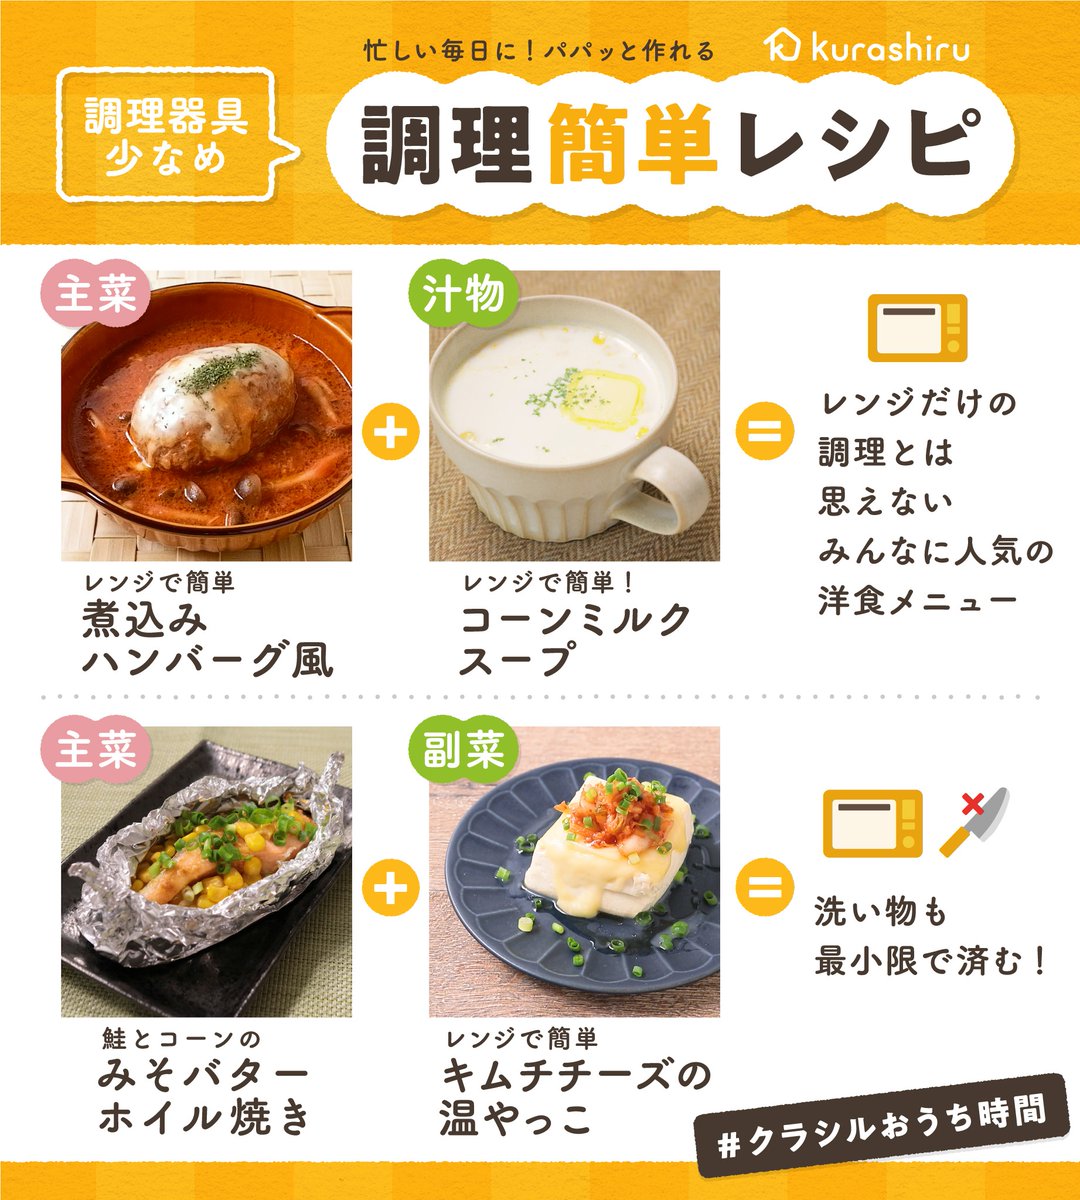 Kurashiru クラシル レシピリクエスト Vol １ 簡単ランチ 献立におすすめ 調理簡単レシピまとめ レンジだけで作れるご飯たくさん 主菜 副菜の簡単献立 お昼にも夕飯にも クラシルのアプリ Webで 検索してみてくださいね